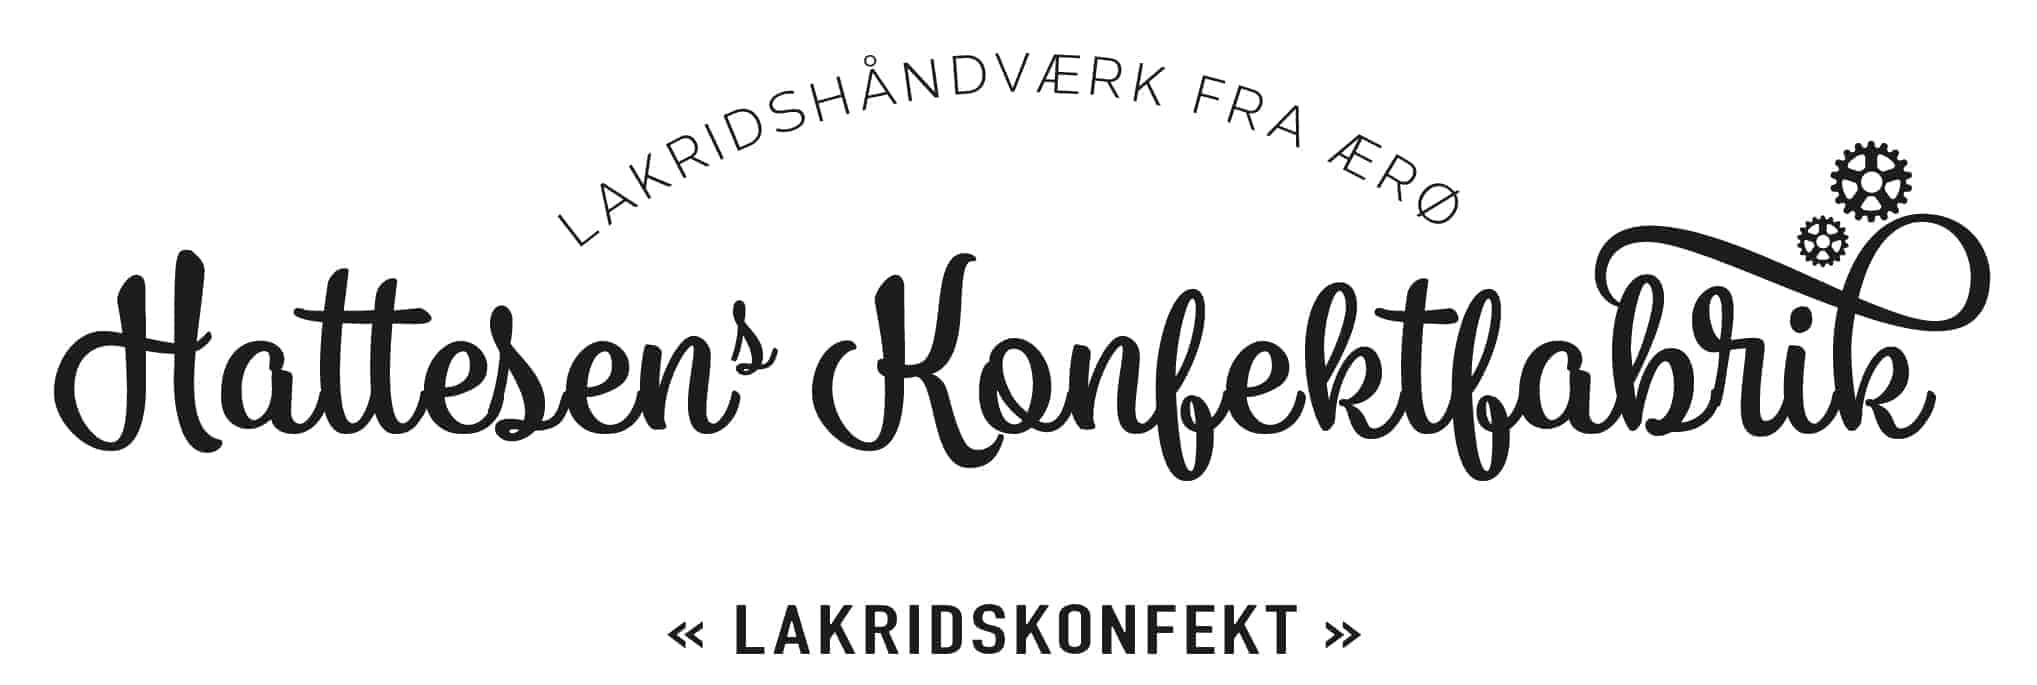 www.konfektfabrikken.dk